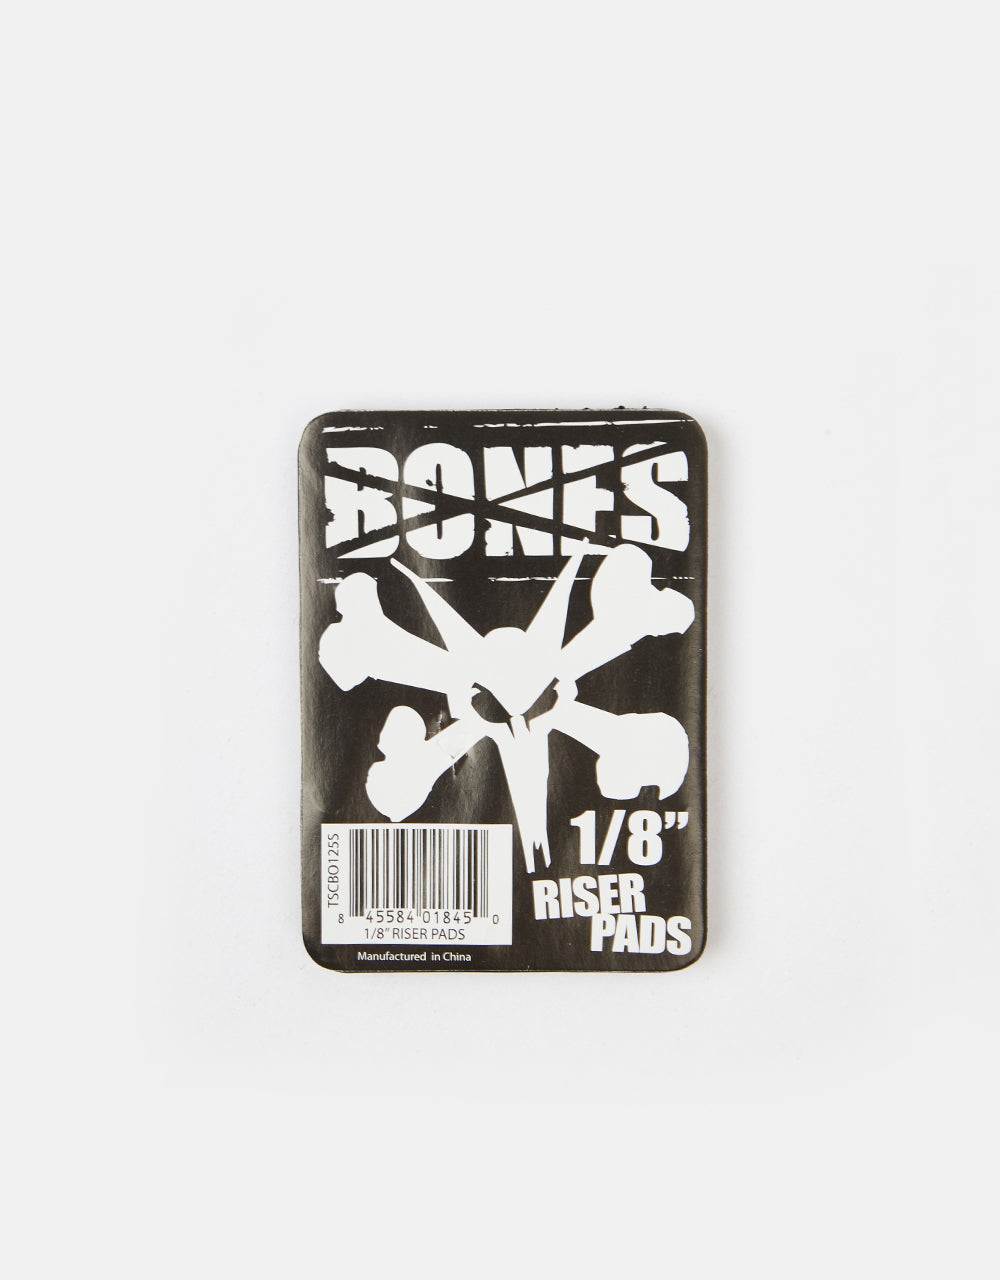 Bones 1/8" Riser Pads (Pair)